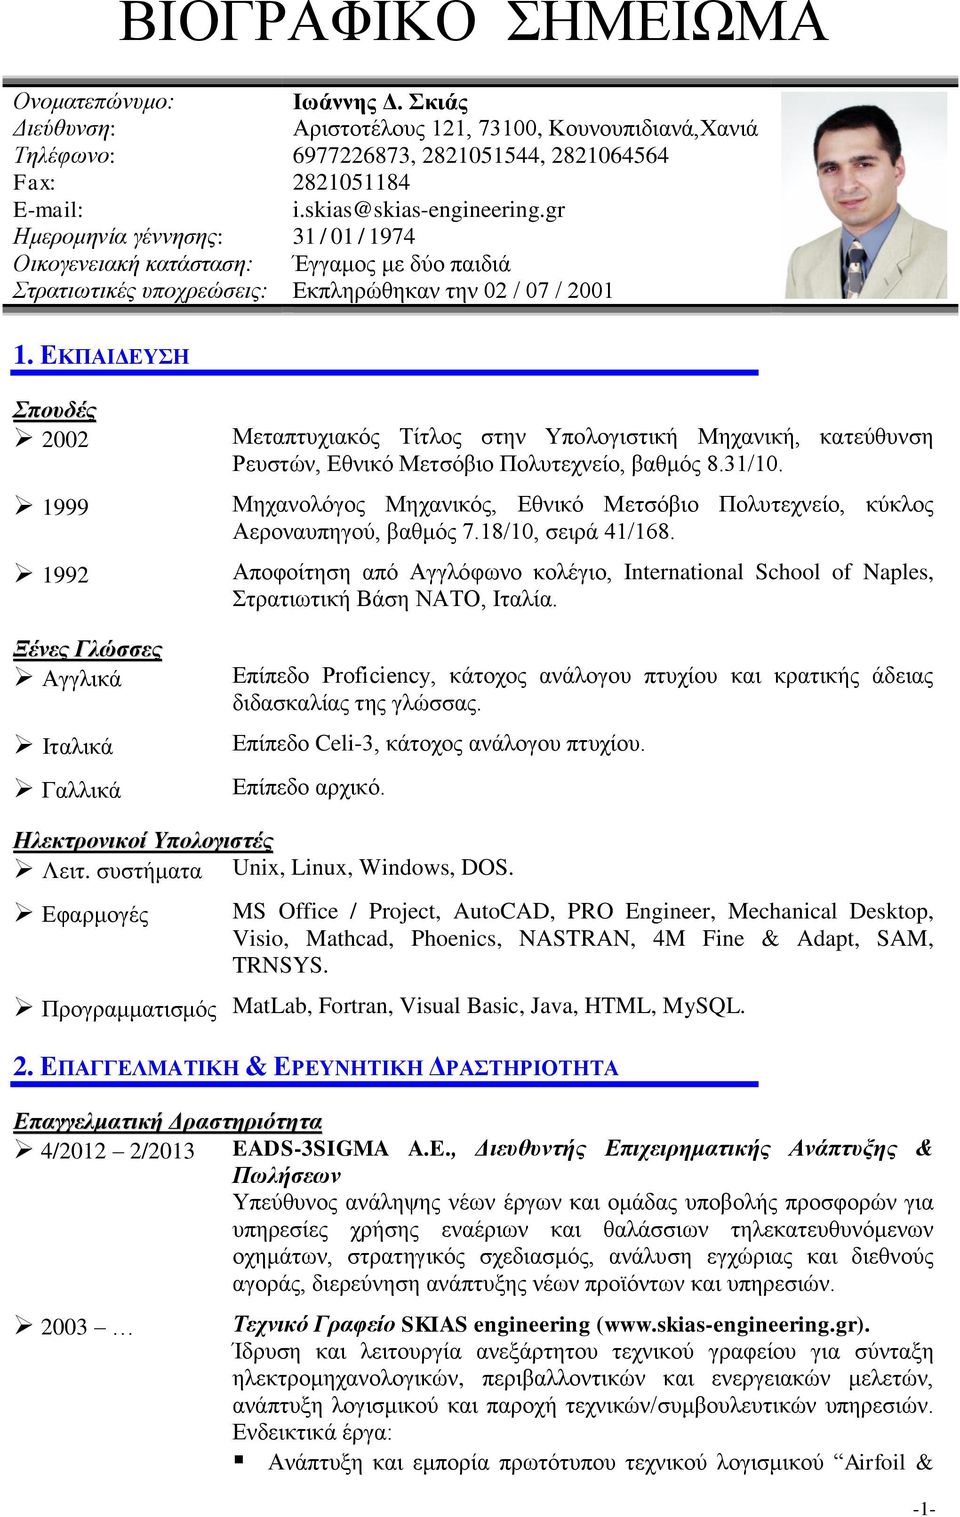 ΕΚΠΑΙΔΕΥΣΗ Σπουδές 2002 1999 1992 Ξένες Γλώσσες Αγγλικά Ιταλικά Γαλλικά Μεταπτυχιακός Τίτλος στην Υπολογιστική Μηχανική, κατεύθυνση Ρευστών, Εθνικό Μετσόβιο Πολυτεχνείο, βαθμός 8.31/10.